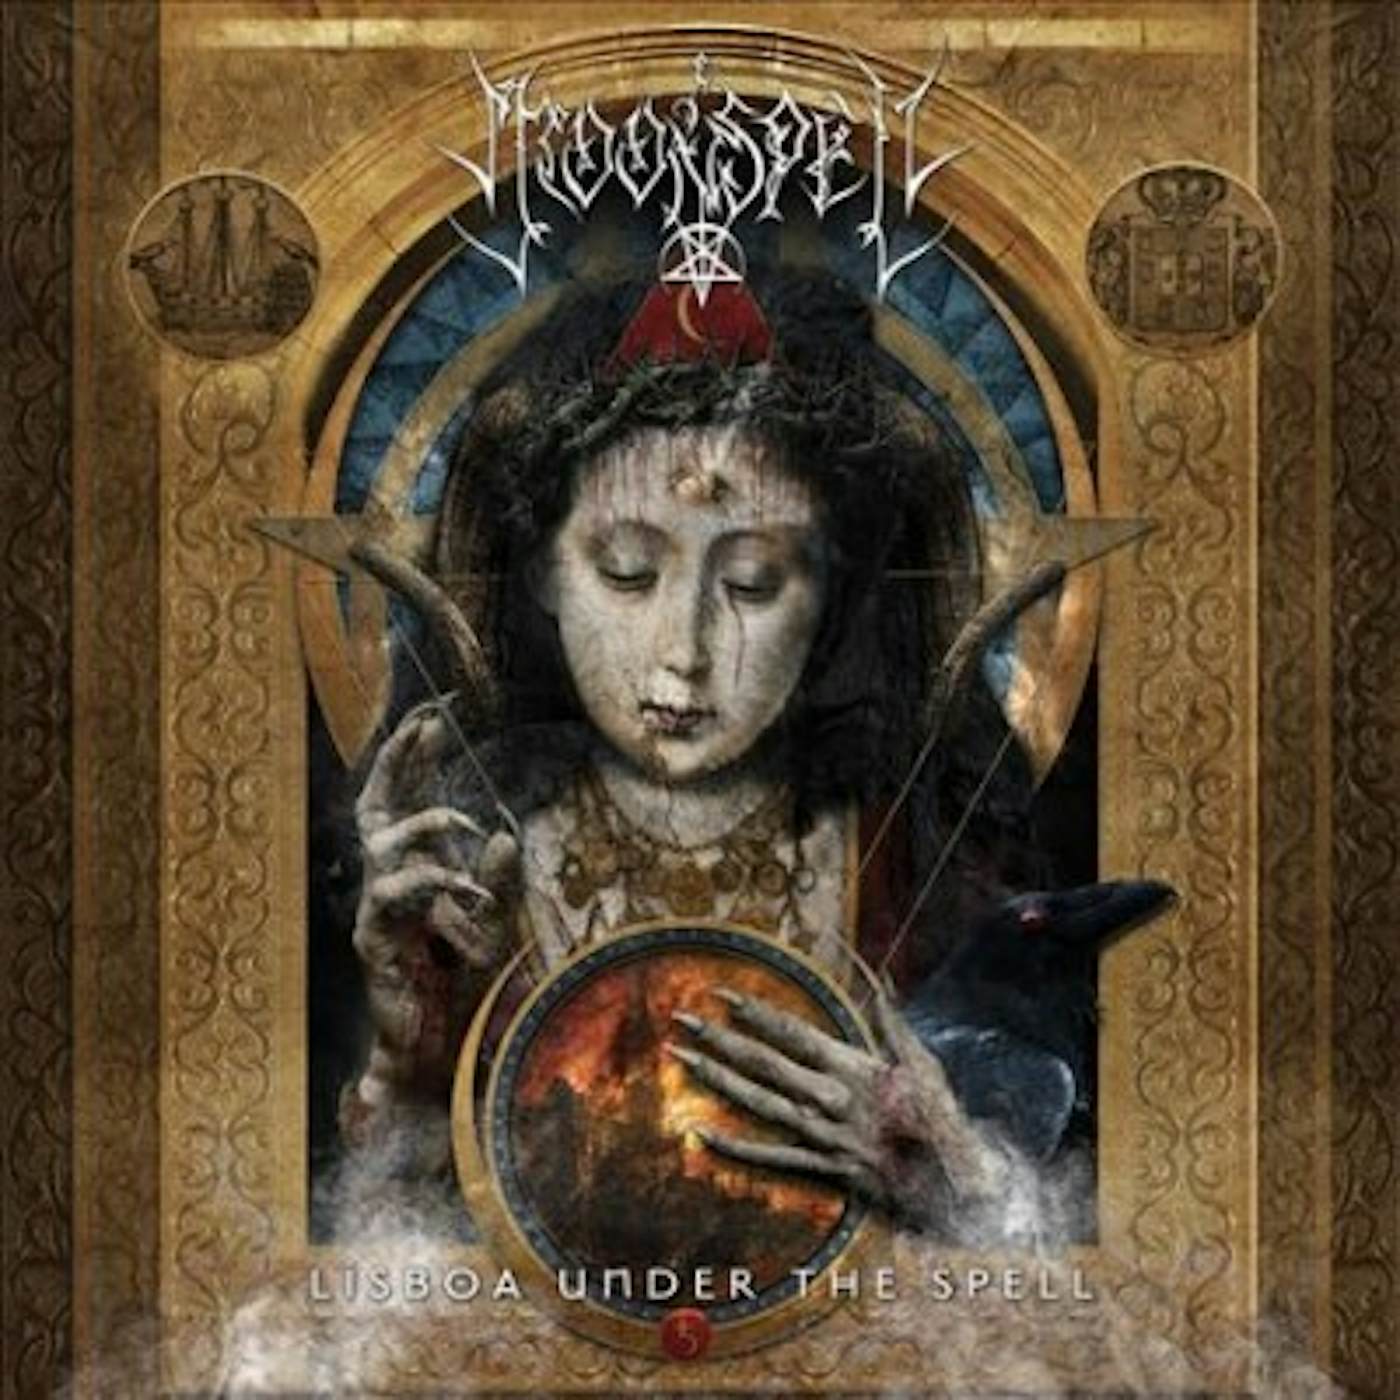 Moonspell LISBOA UNDER THE SPELL (3CD/DVD/BLURAY) CD